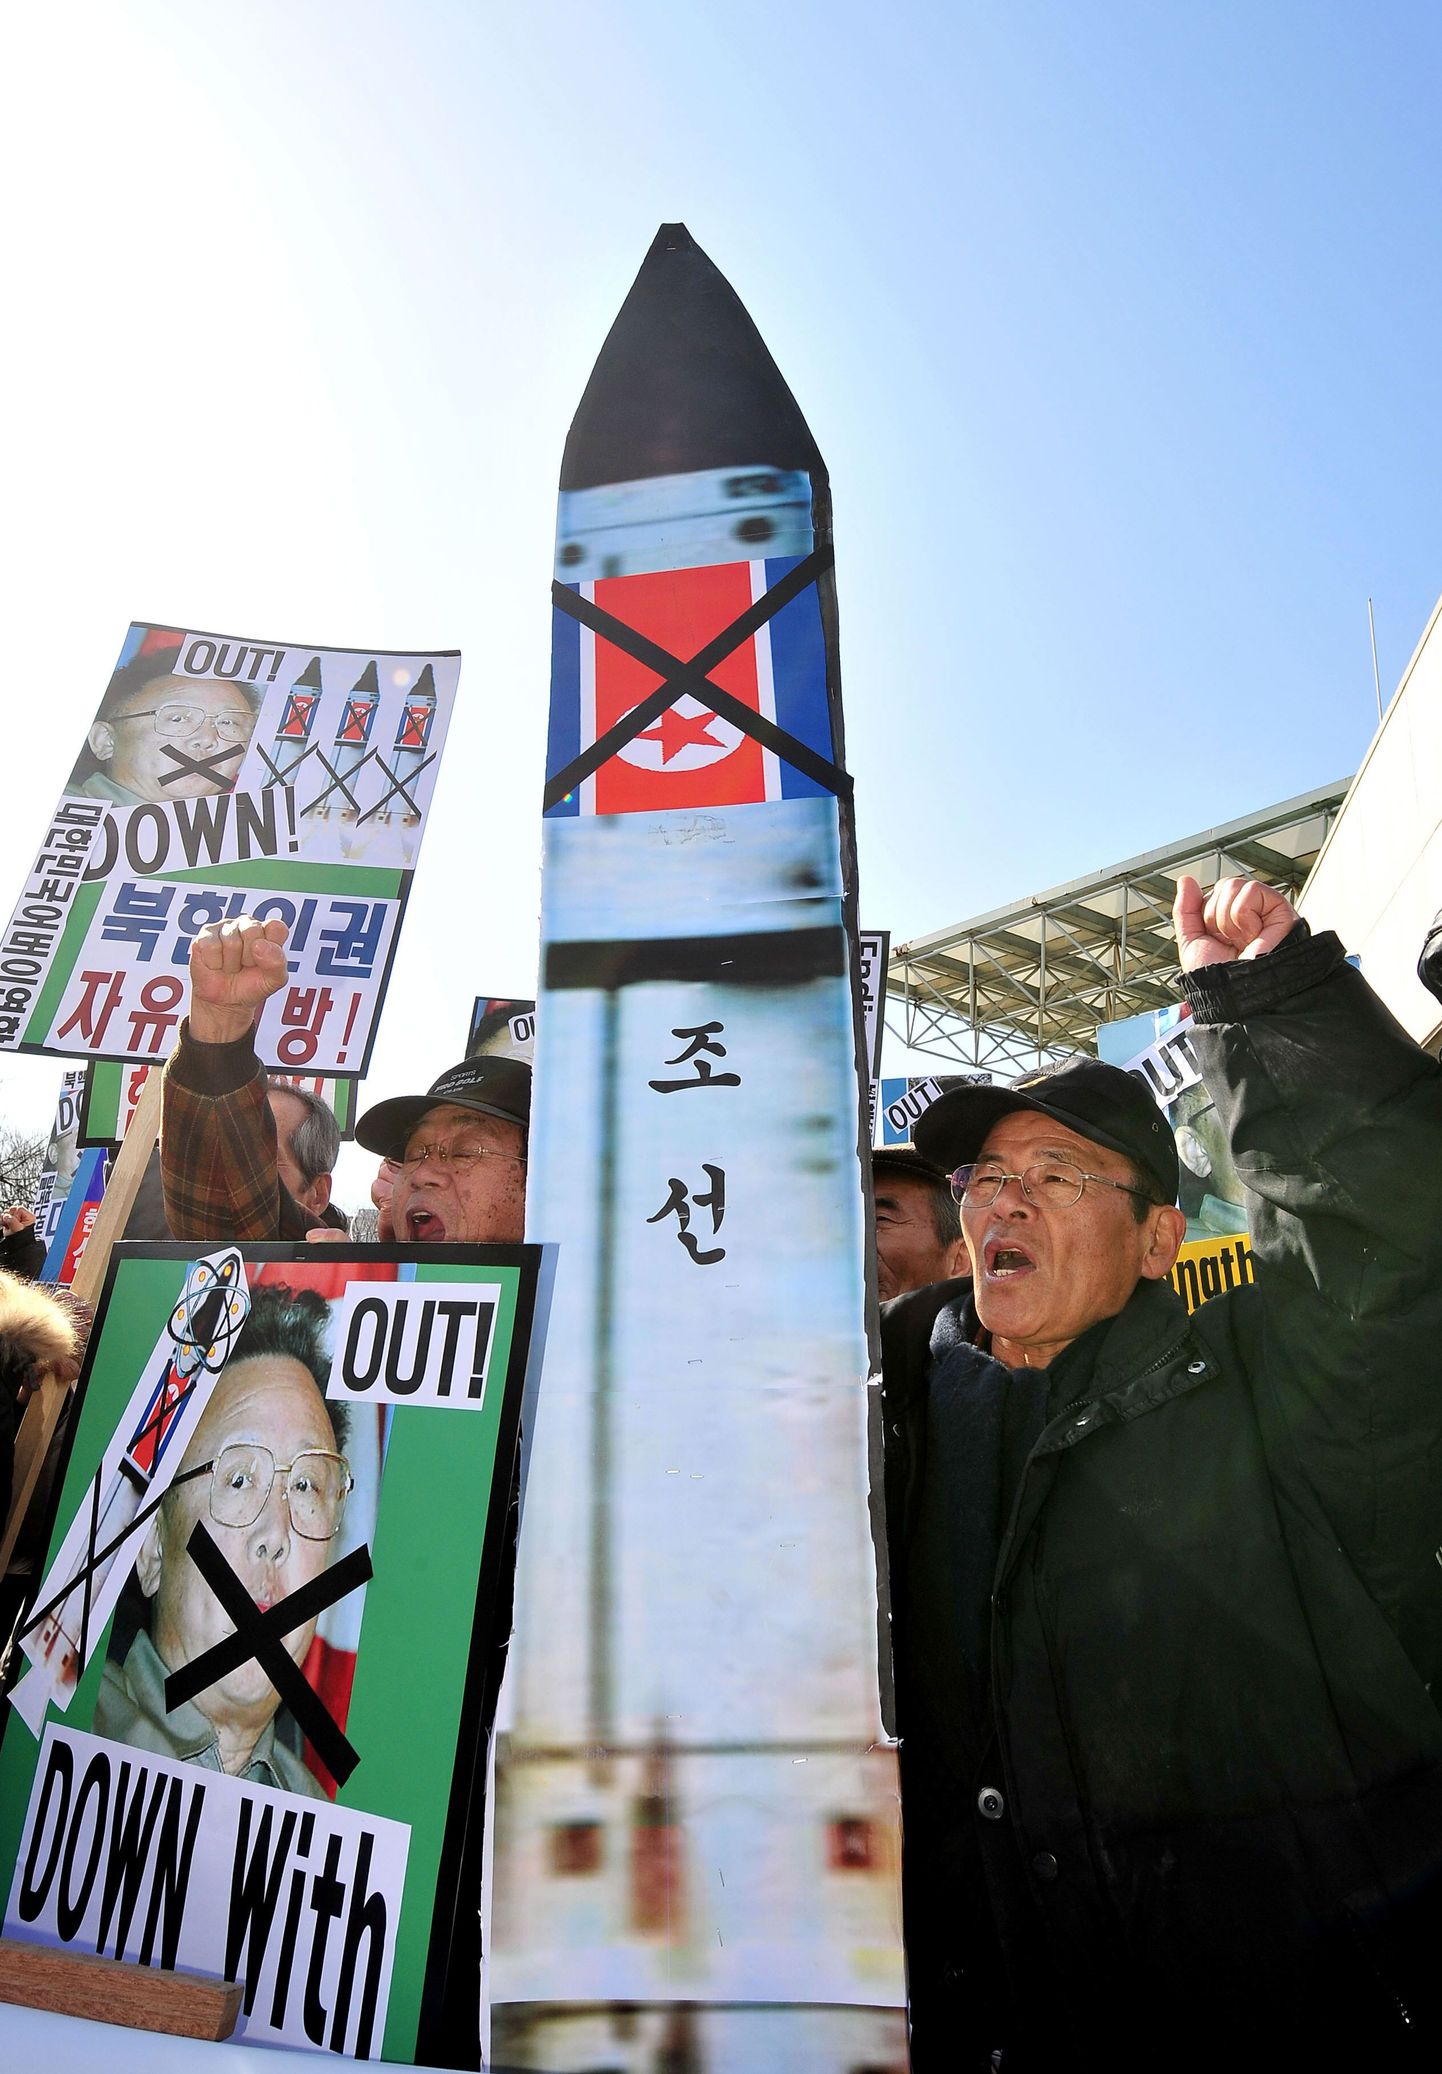 Lõuna-Koreas toimunud meeleavaldus, kus avaldati meelt Põhja-Korea võimaliku raketikatsetuse vastu.